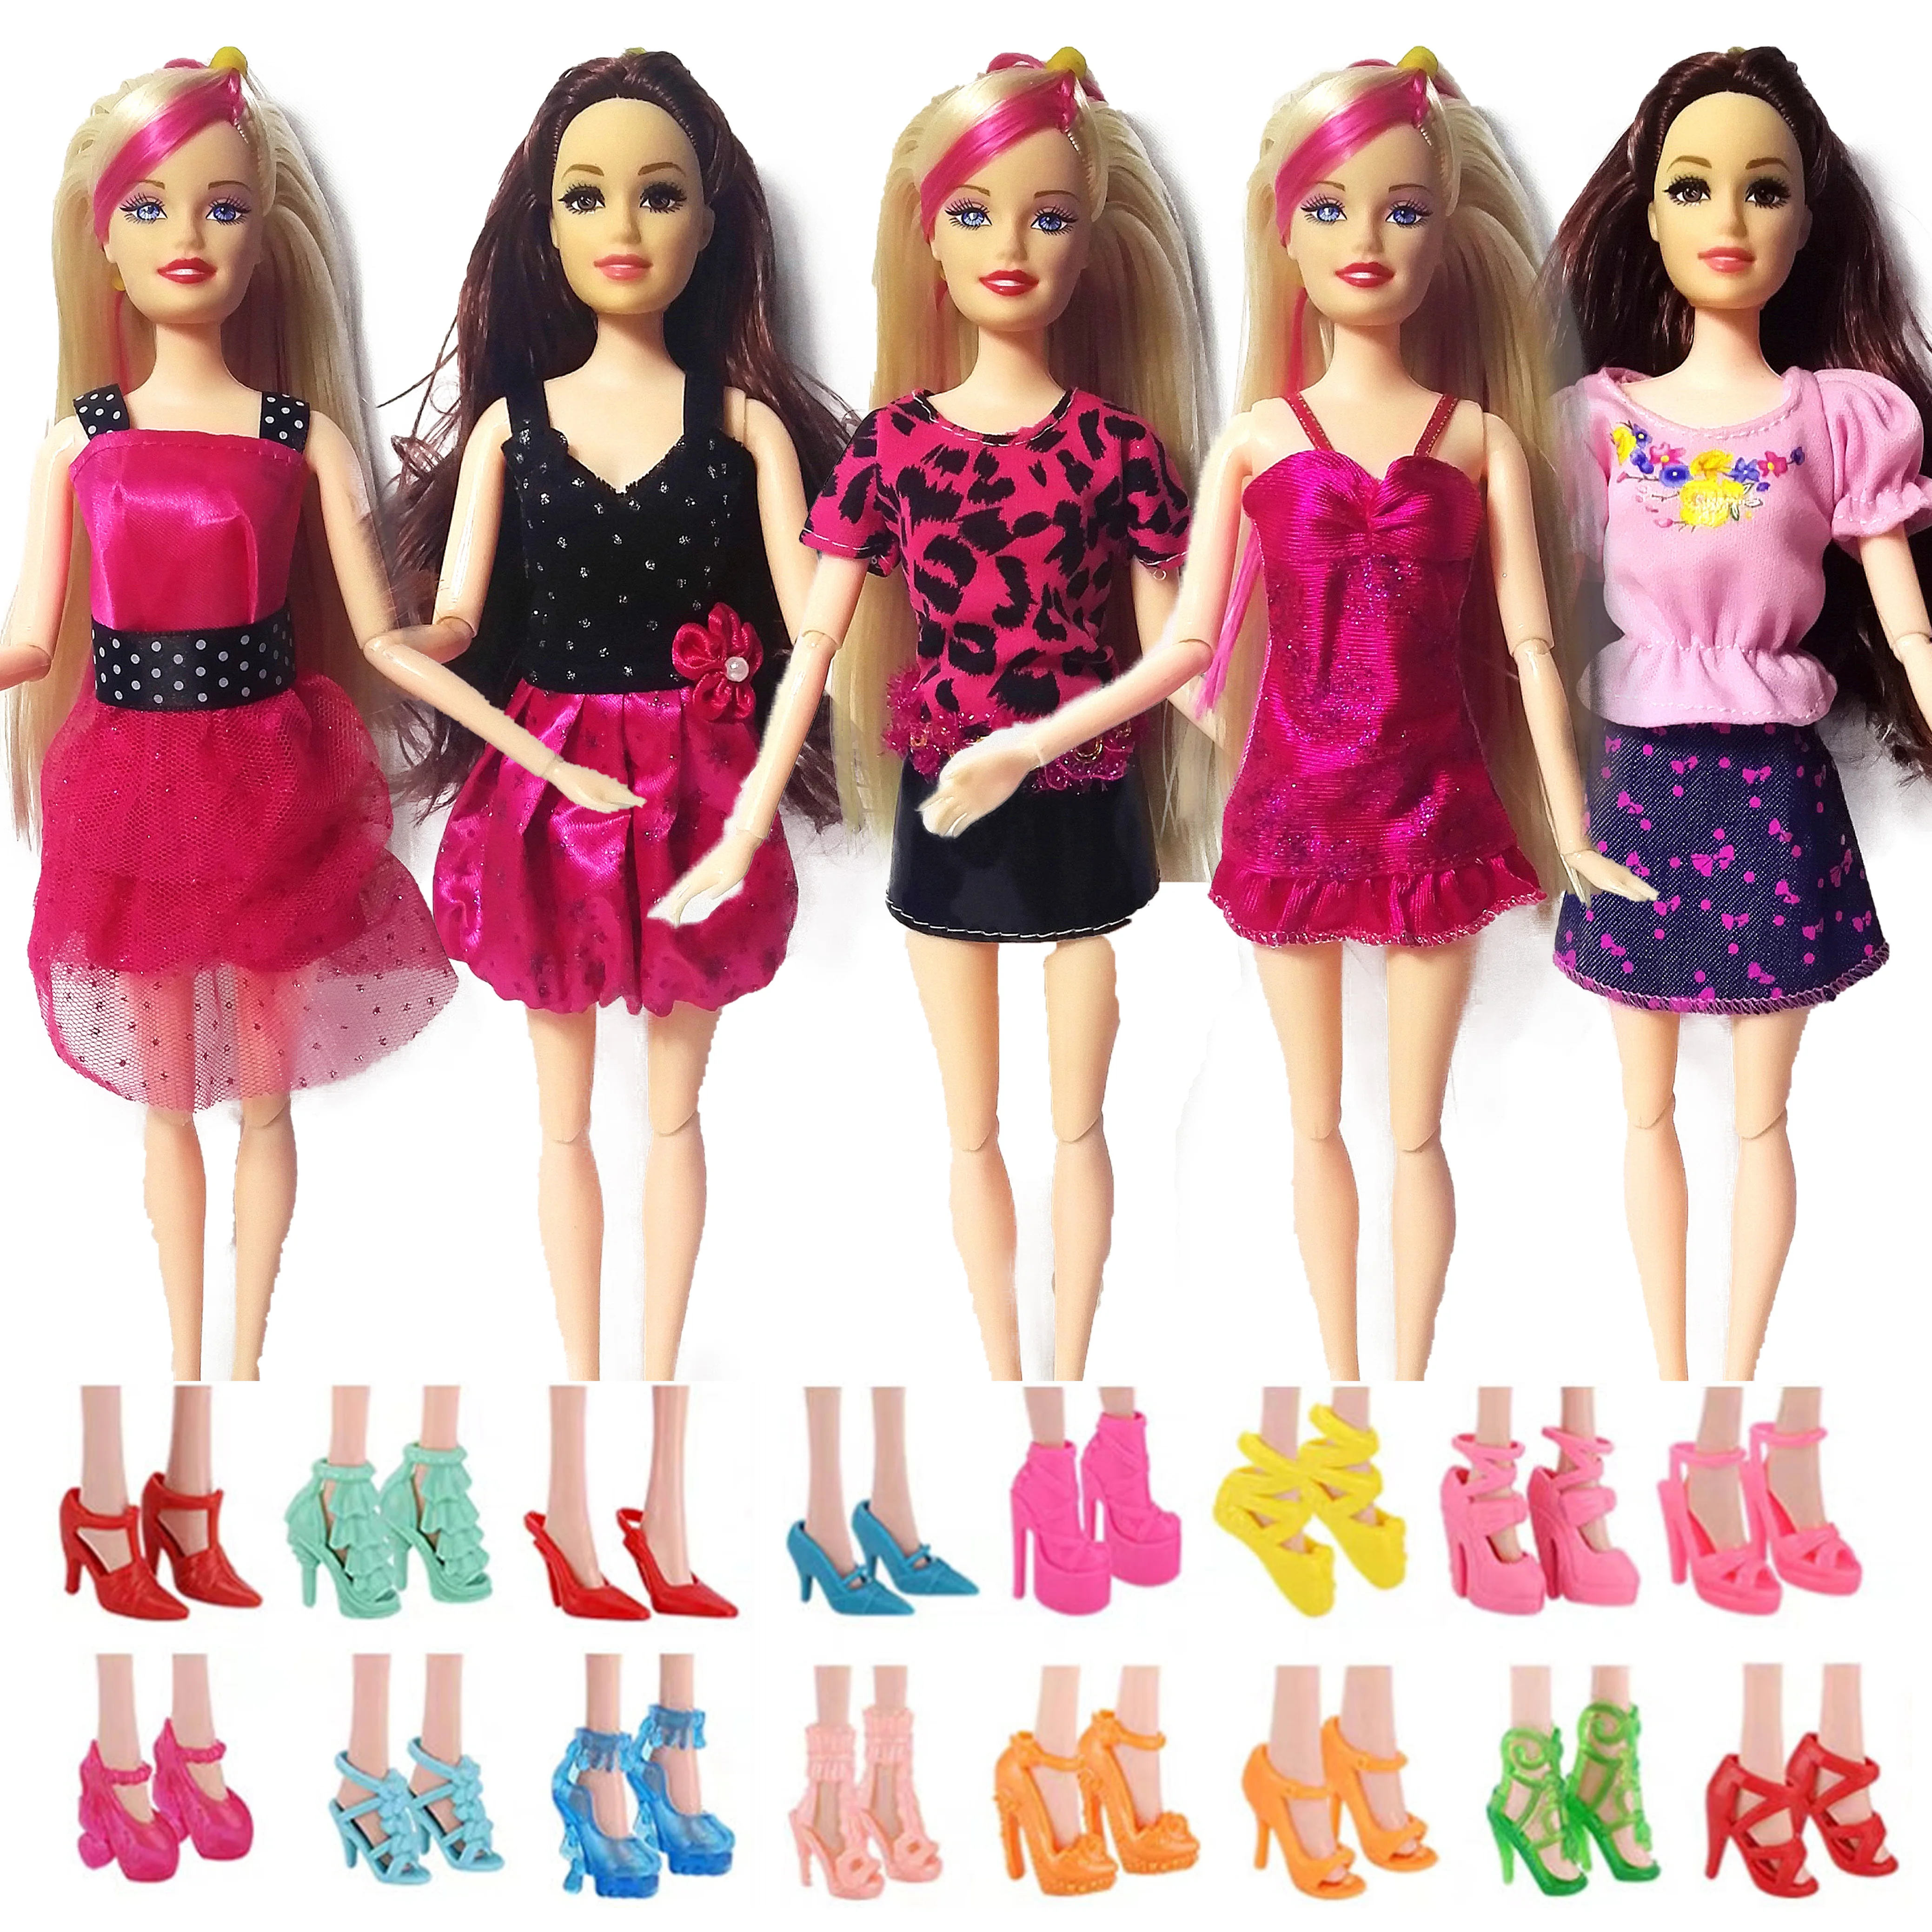 12 Шт. = Вечерние 5 комплектов одежды ручной работы, Модное платье в смешанном стиле + 7 Пар Аксессуаров, Обувь для куклы Барби, Лучший подарок для девочек, игрушки